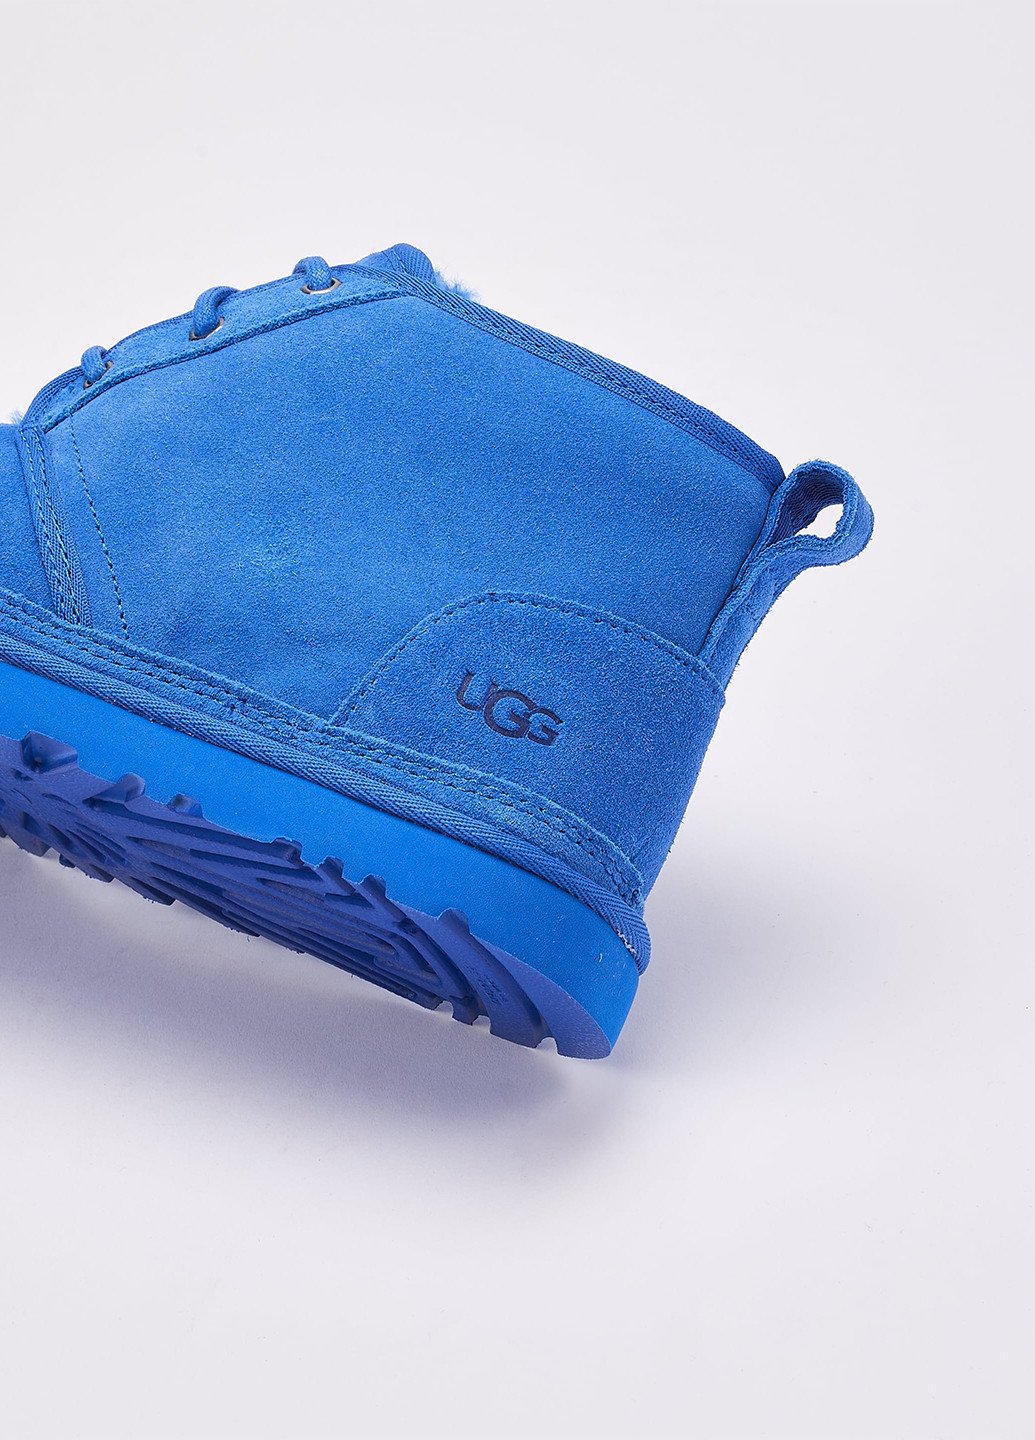 Синие зимние ботинки UGG